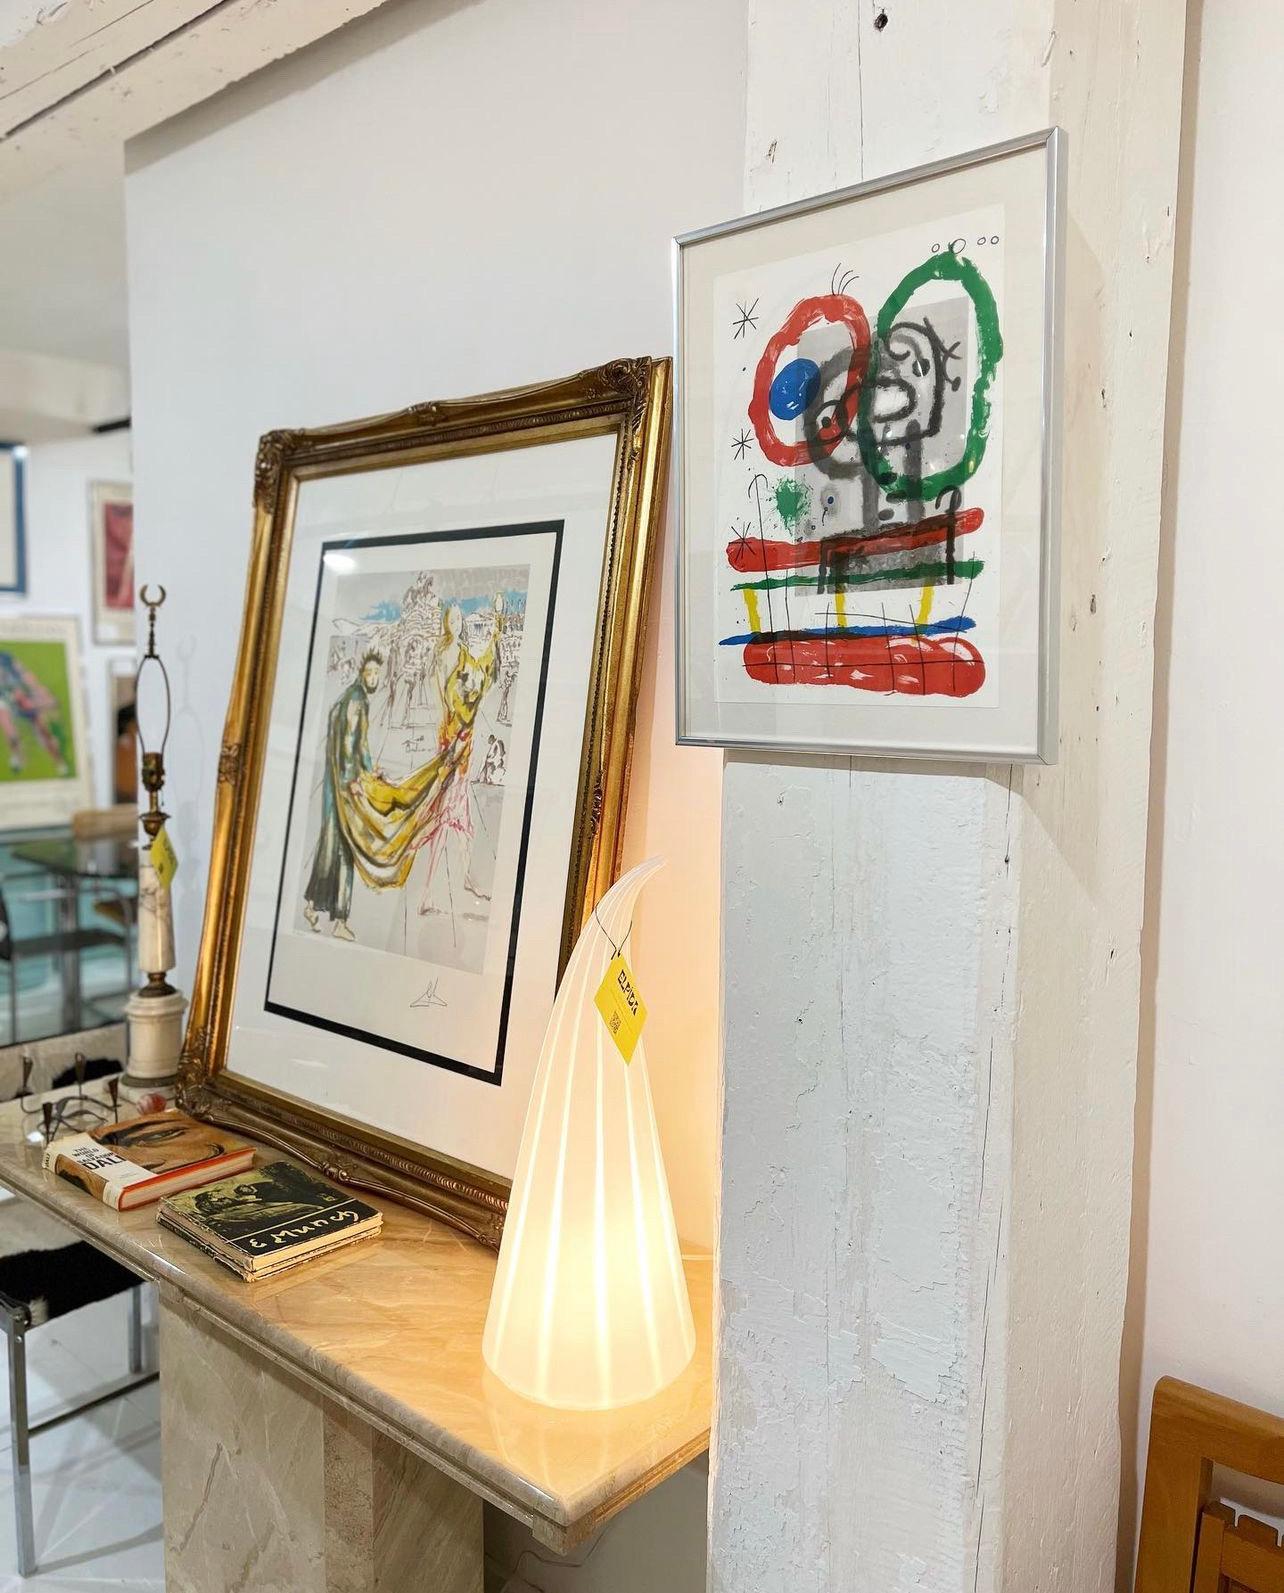 Joan Miró Lithographie, Derrière le Miroir

Une lithographie originale brillante et éclatante de l'un des plus grands artistes du XXe siècle. Encadré et prêt à être accroché. 

Hauteur 18